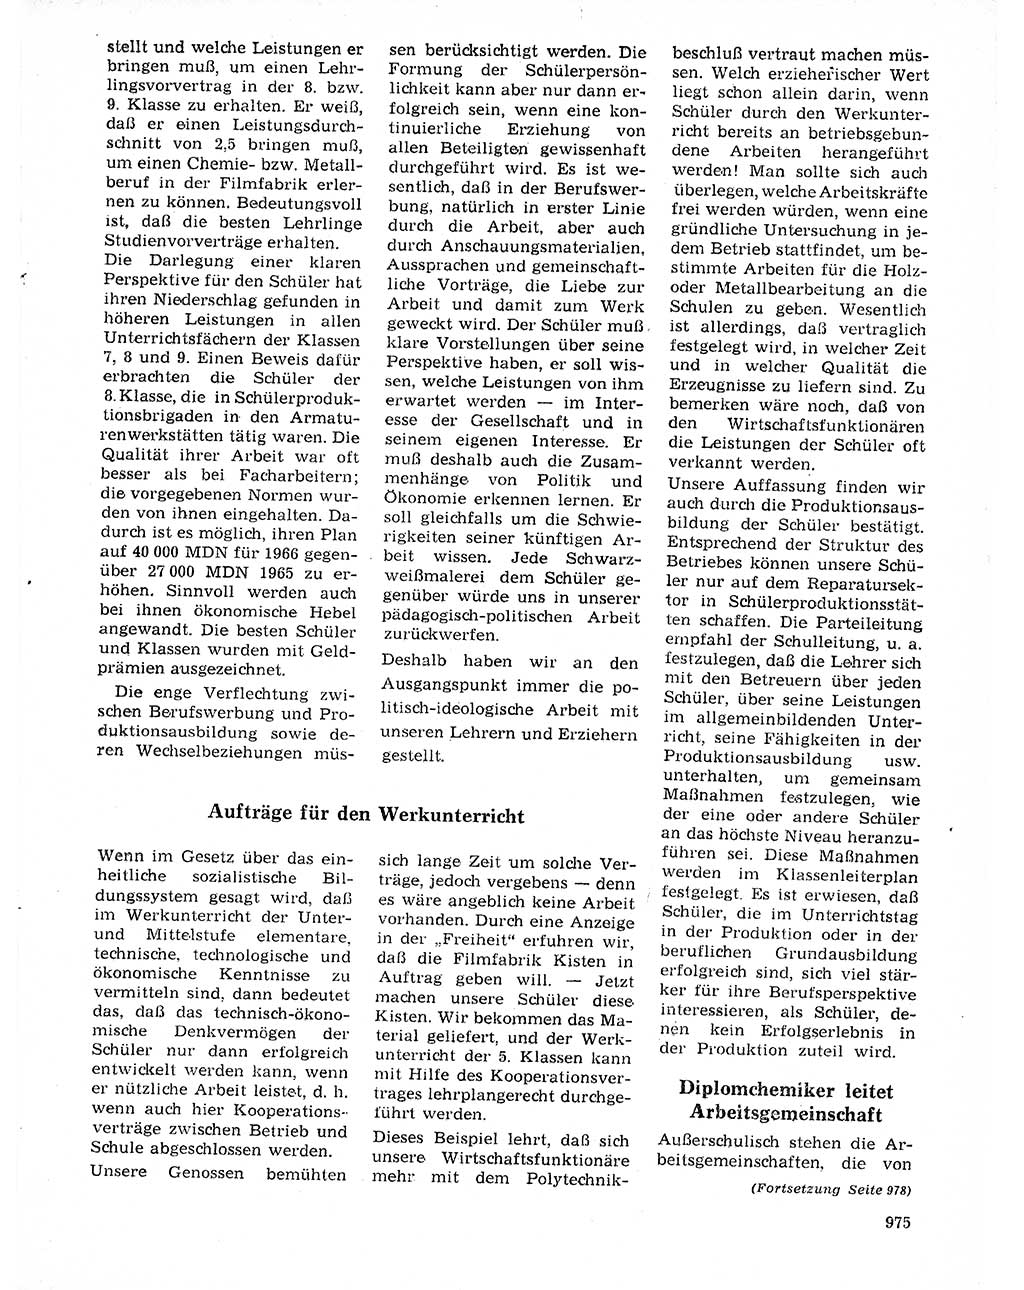 Neuer Weg (NW), Organ des Zentralkomitees (ZK) der SED (Sozialistische Einheitspartei Deutschlands) für Fragen des Parteilebens, 20. Jahrgang [Deutsche Demokratische Republik (DDR)] 1965, Seite 959 (NW ZK SED DDR 1965, S. 959)